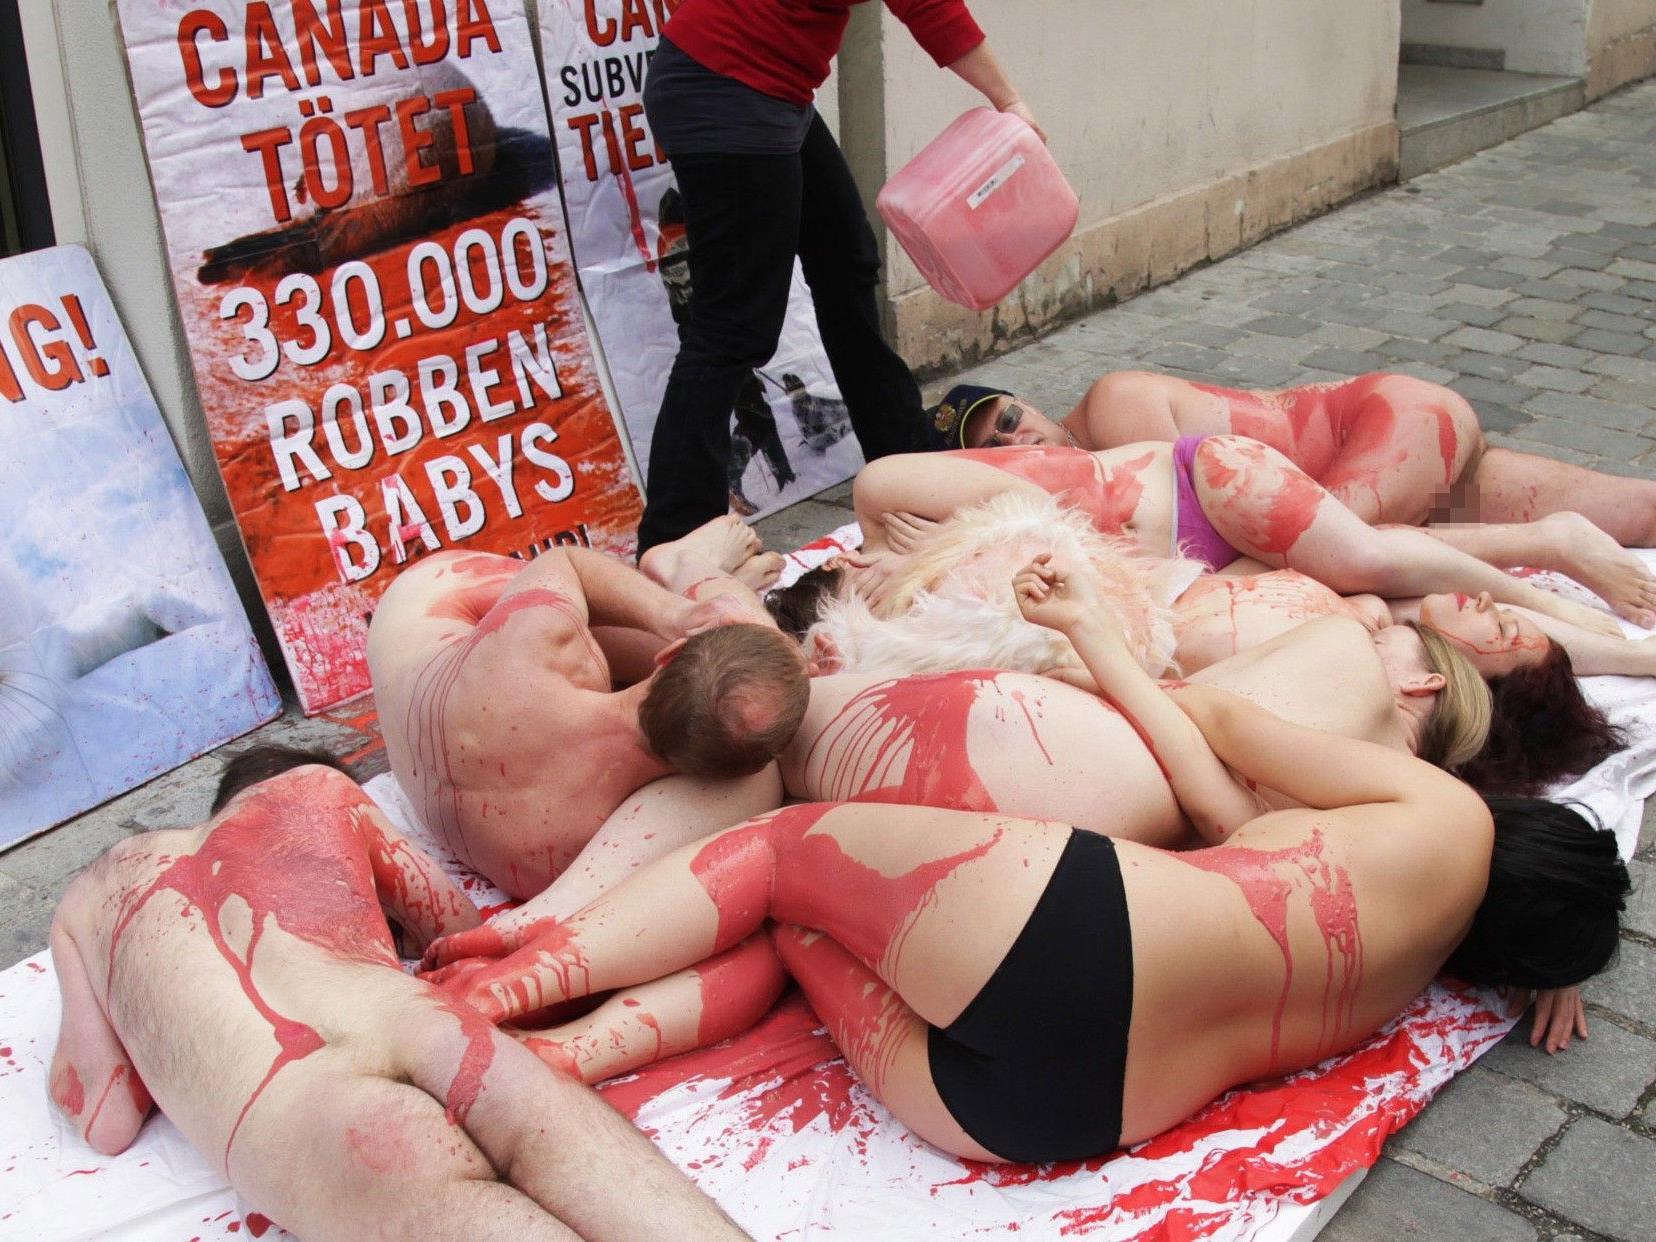 Aktivisten des VGT demonstrierten bei ihrem Nackt-Protest vor der kanadischen Botschaft.